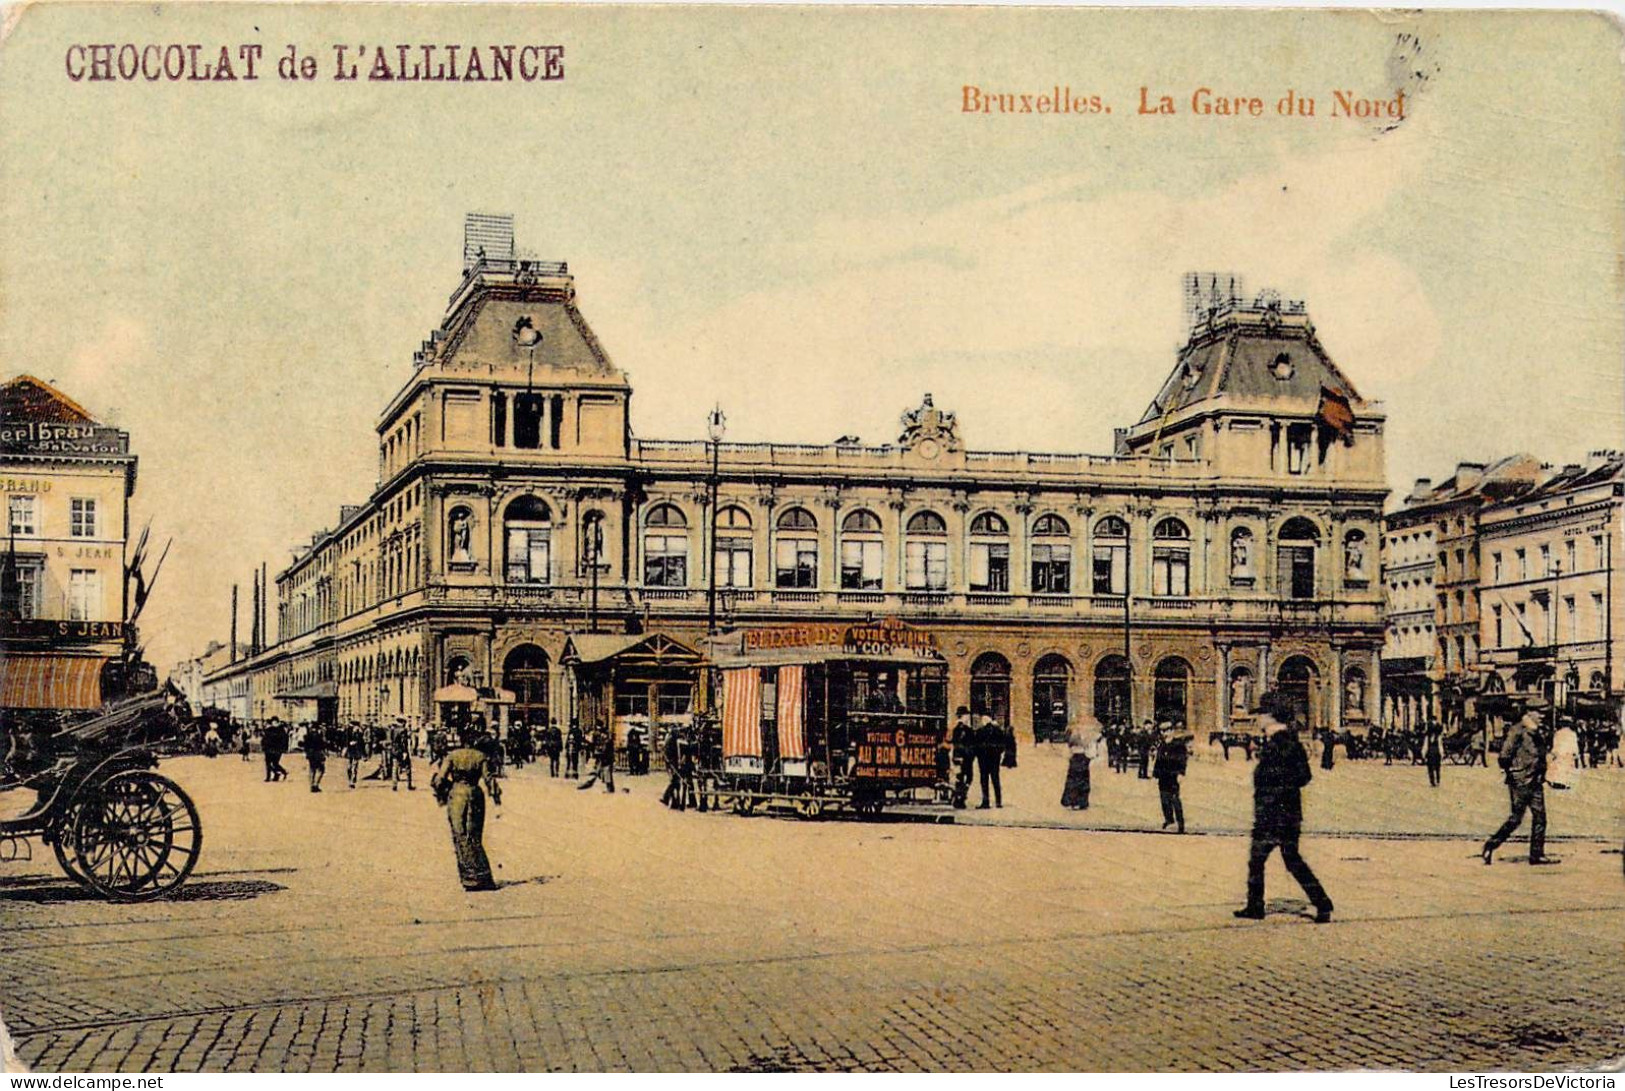 BELGIQUE - Bruxelles -  La Gare Du Nord - Chocolat De L'Alliance - Carte Postale Ancienne - Ferrovie, Stazioni